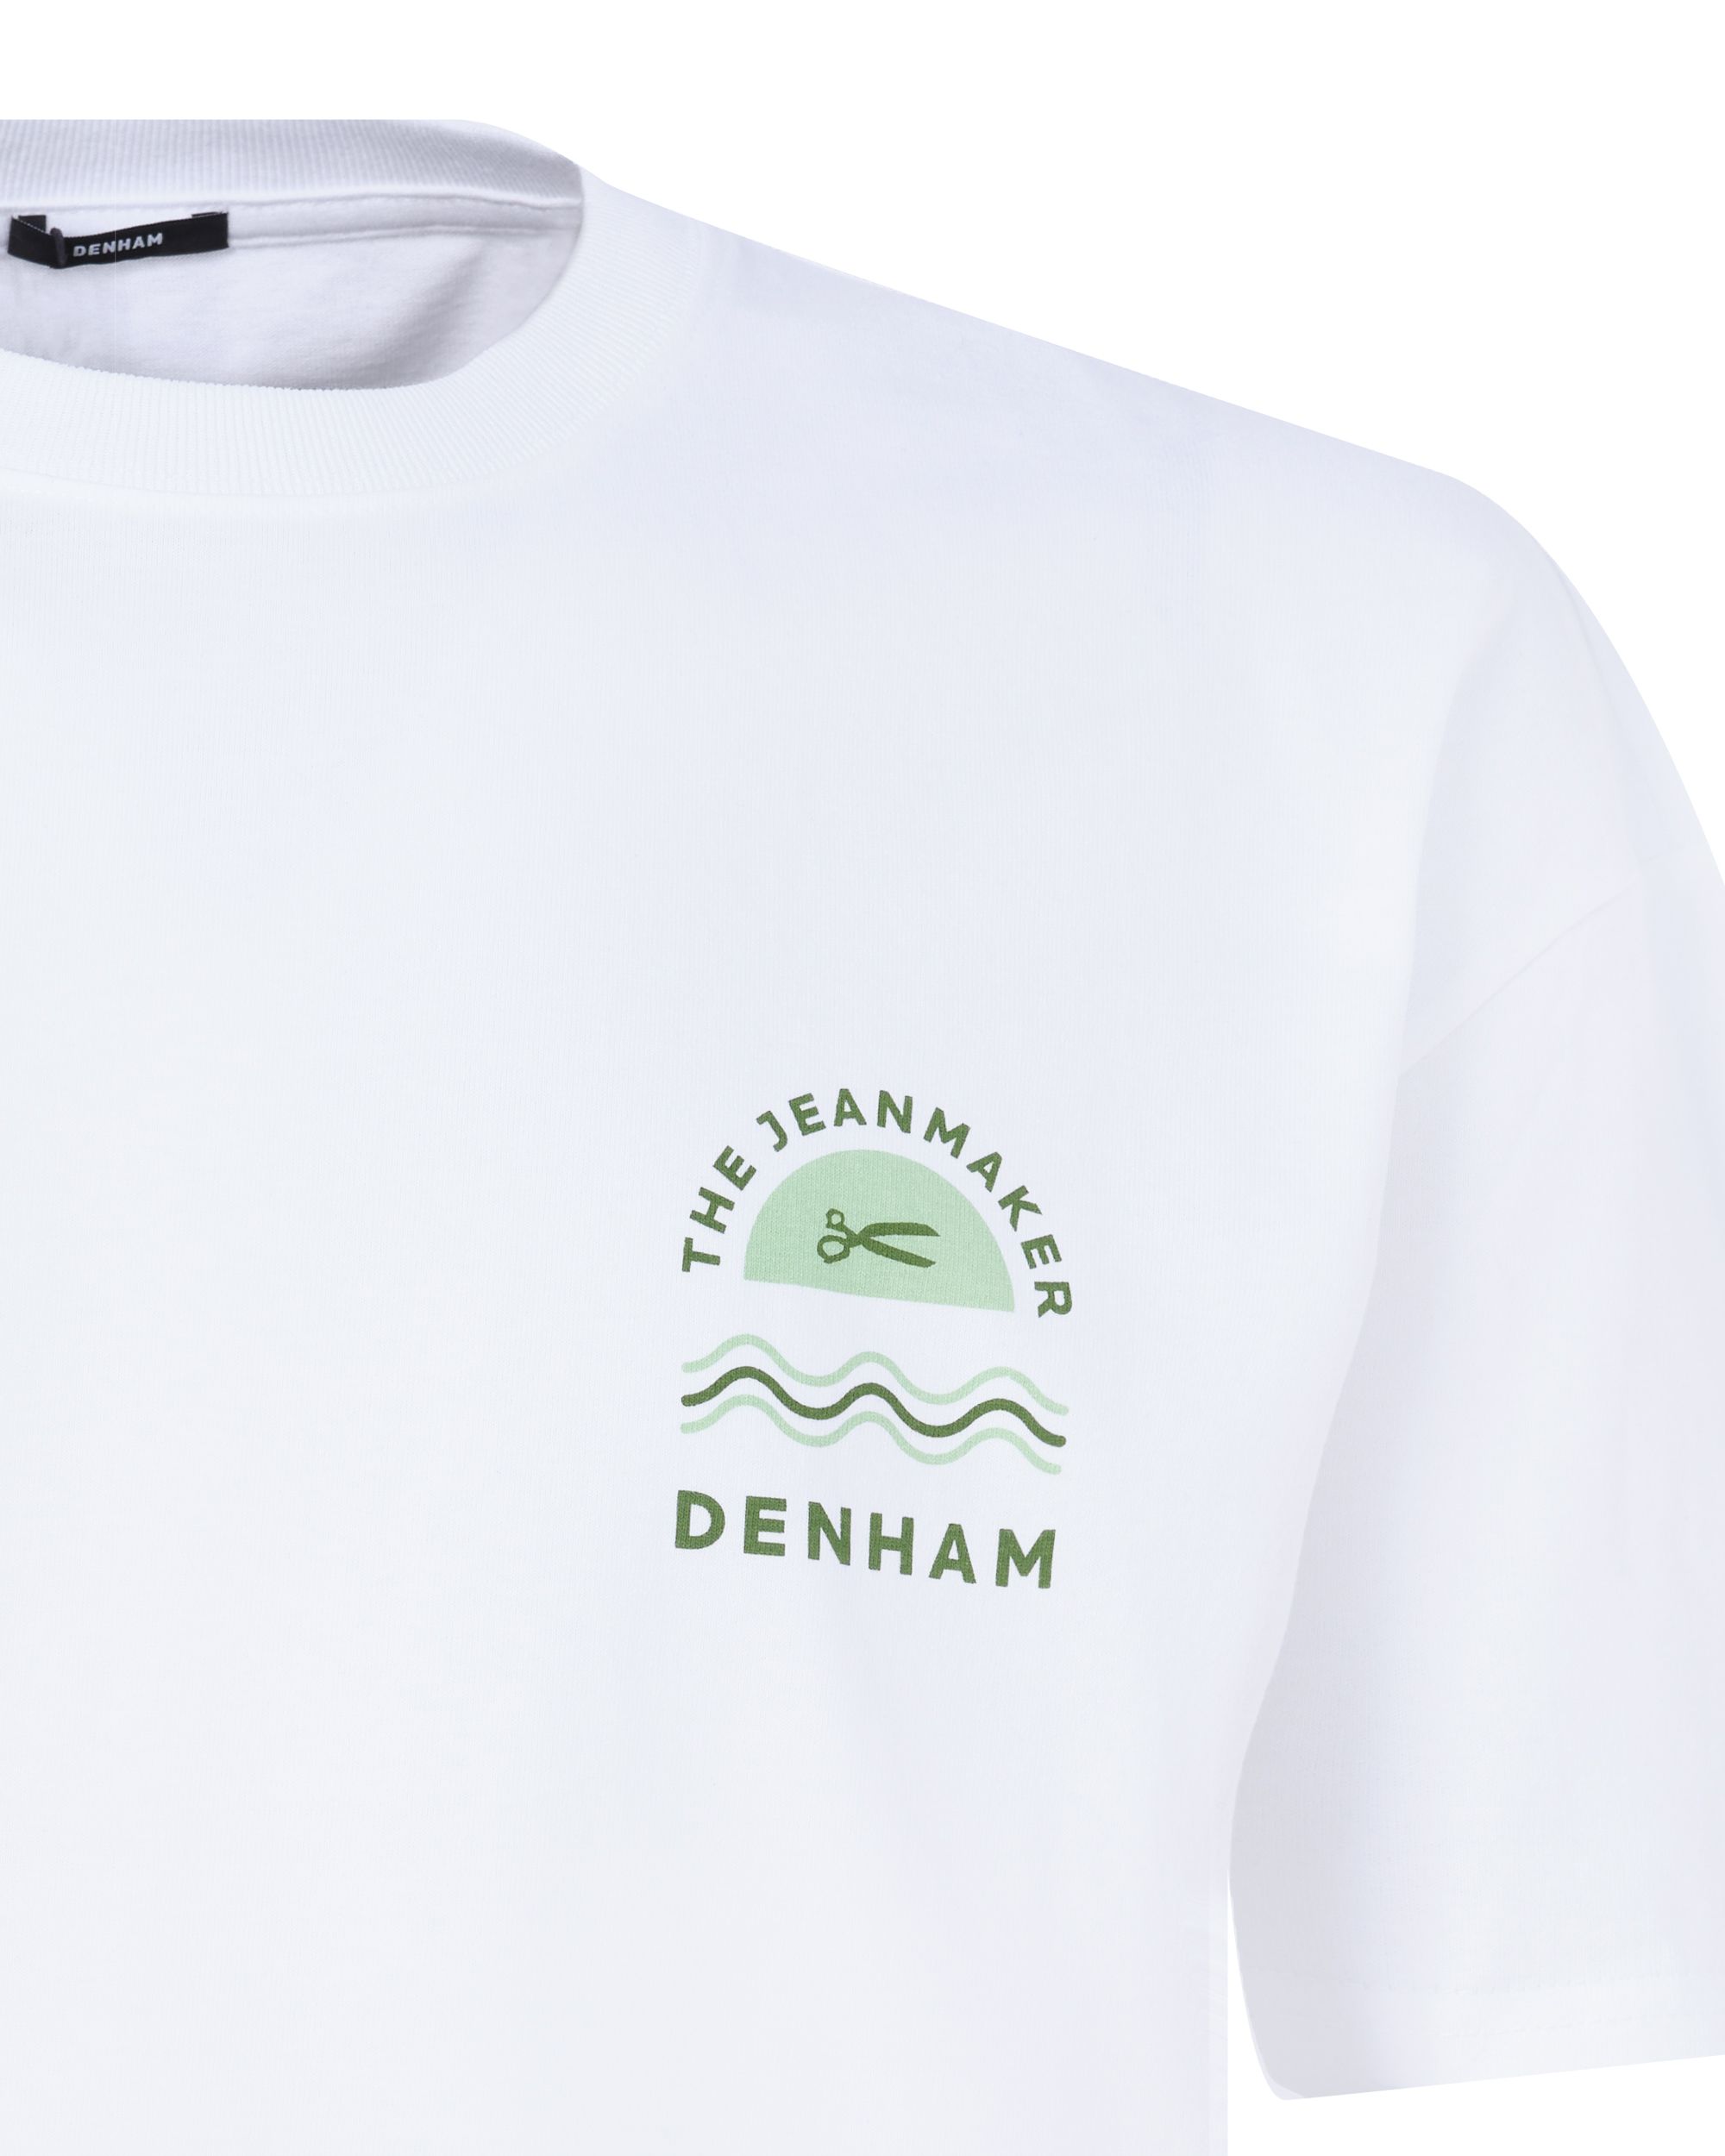 DENHAM House Box T-shirt KM Wit 089111-001-L